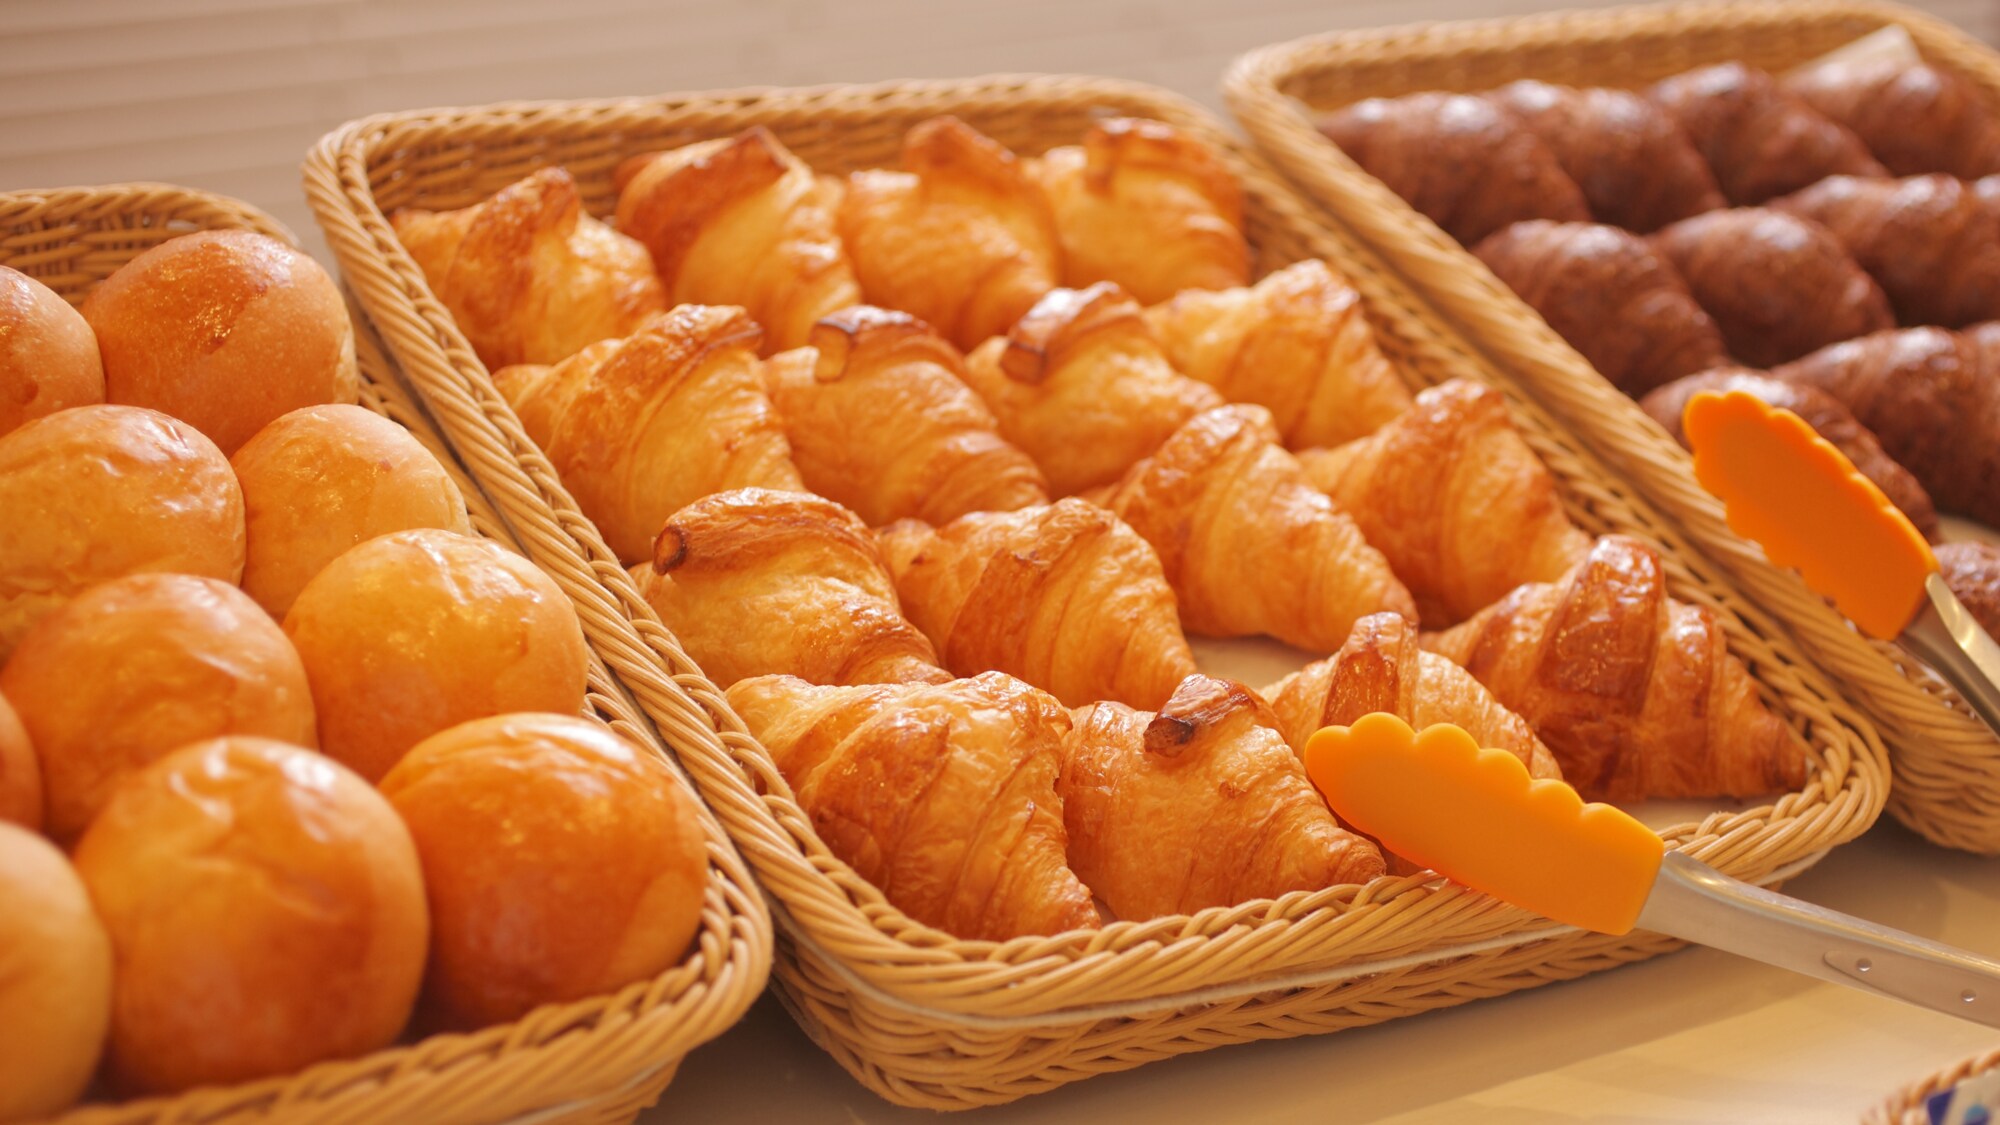 Tiga jenis roti yang baru dipanggang disiapkan setiap pagi. (Croissant, roti gulung, roti basil, roti gula merah setiap hari)